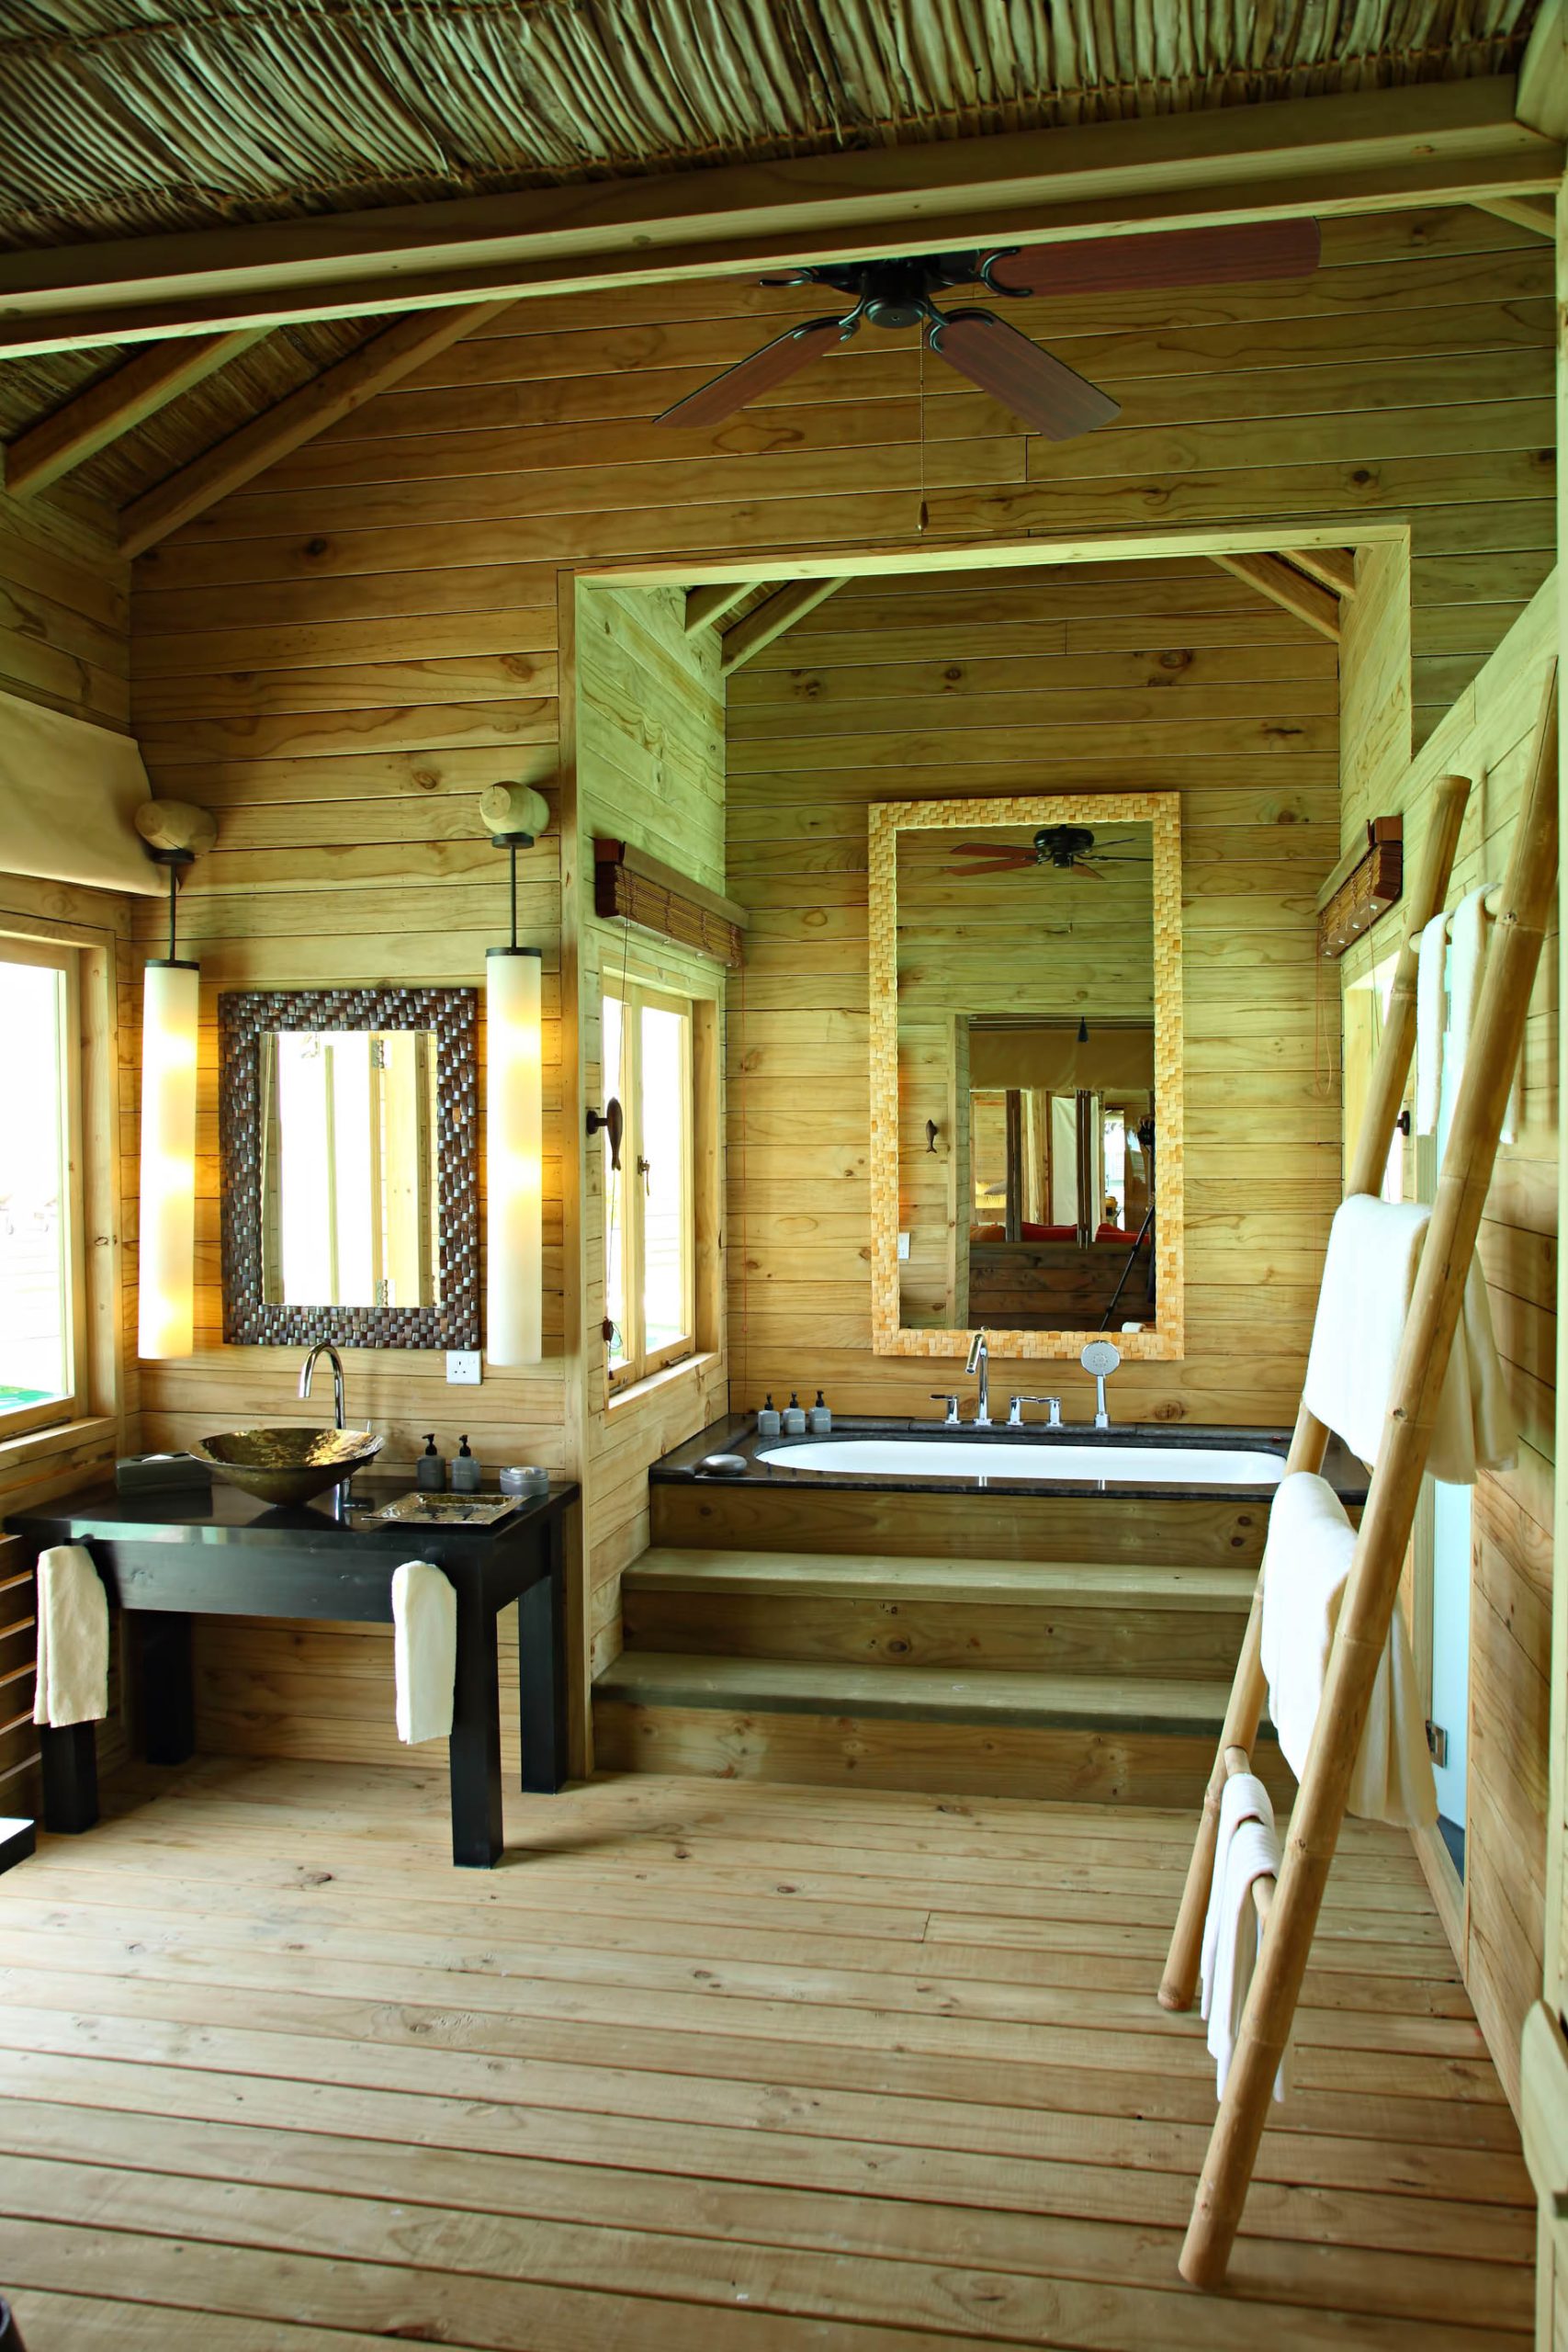 Gili Lankanfushi Resort – North Male Atoll, Maldives – The Private Reserve Master Suite Bathroom